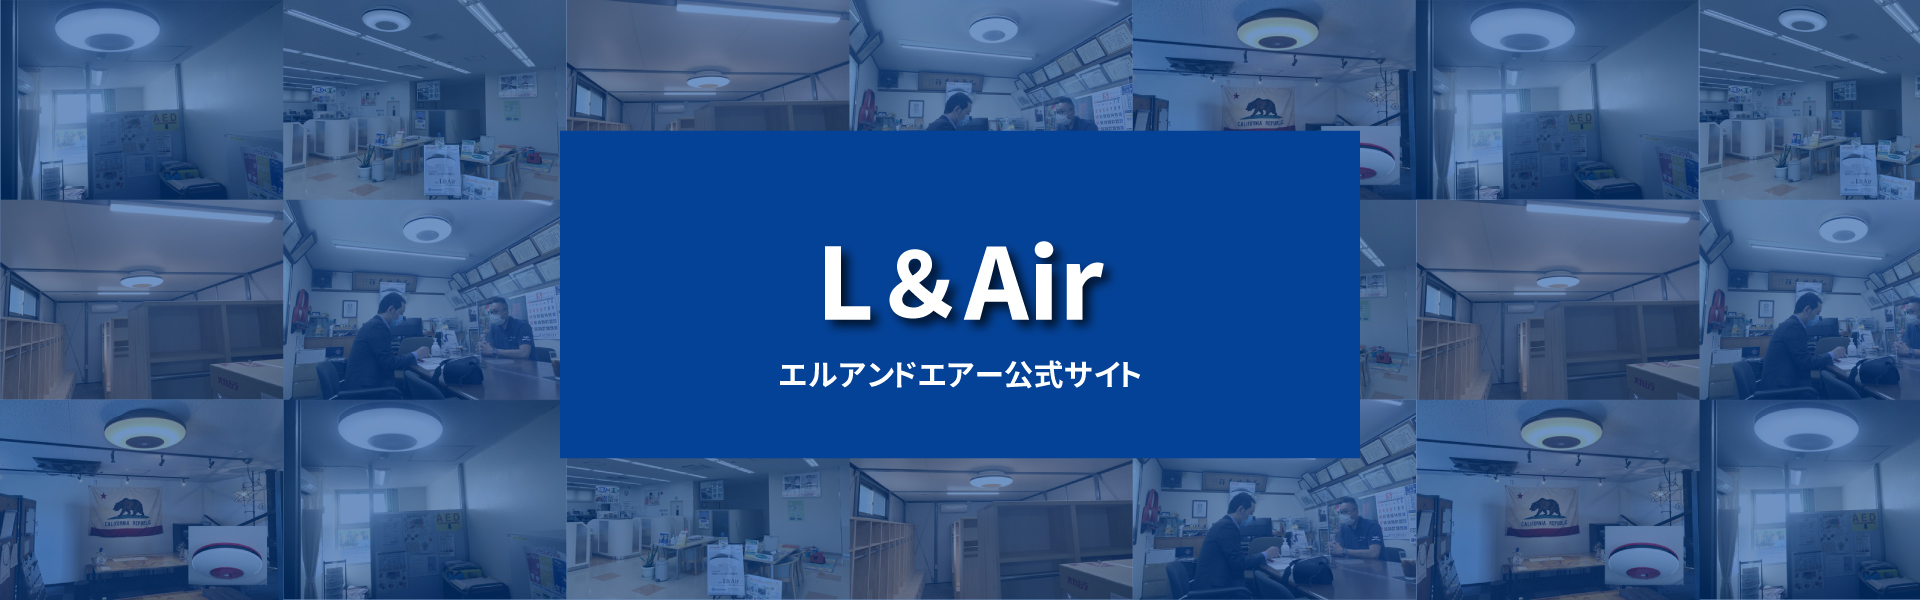 L&Air公式ページバナー